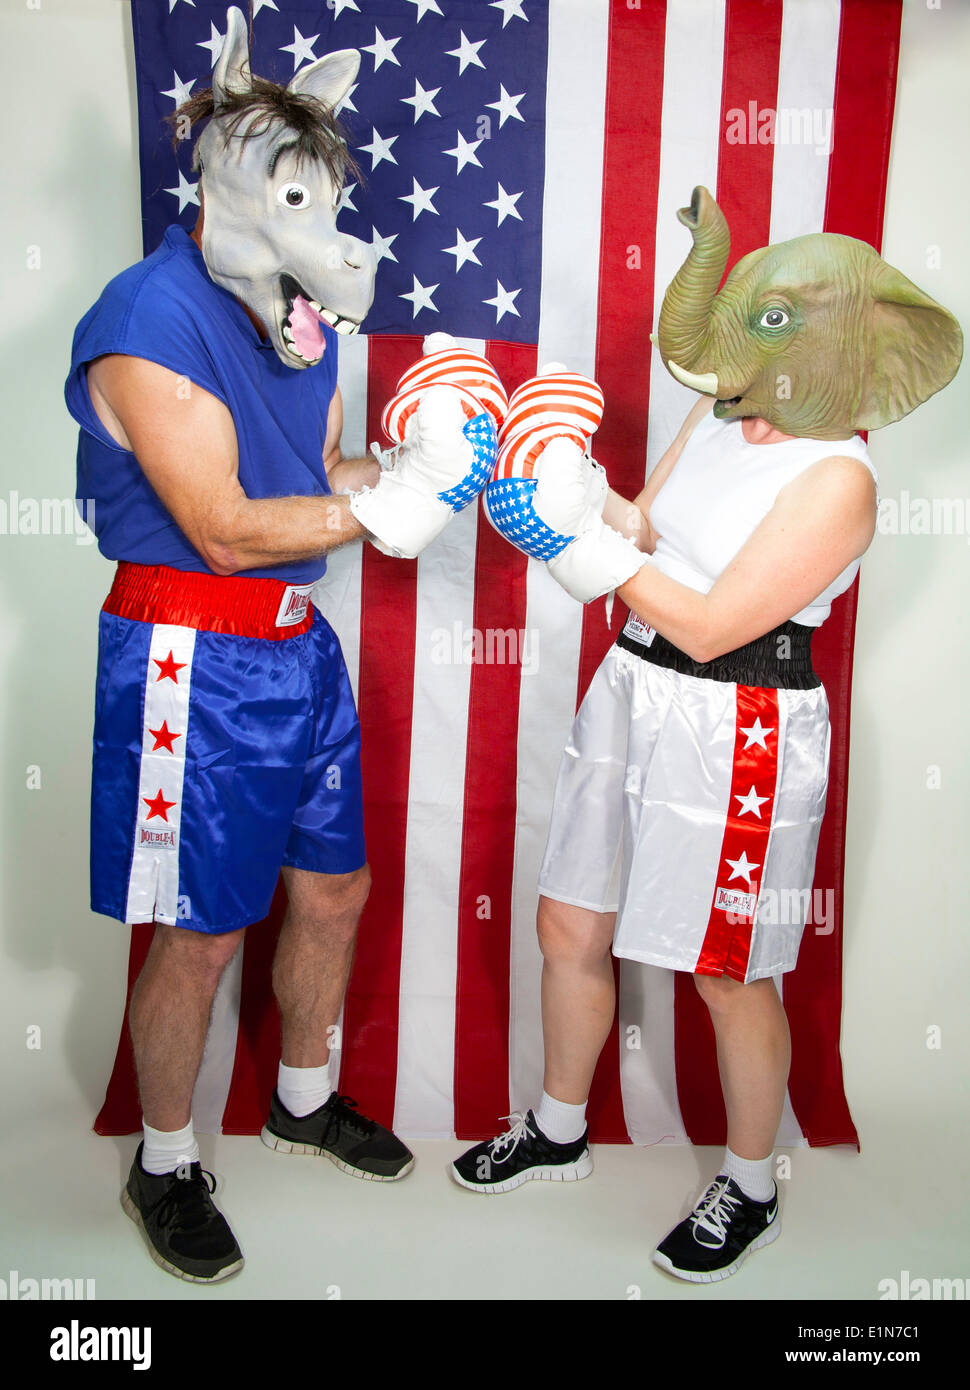 Republikaner und Demokraten Boxer Quadratur off vor einer amerikanischen Flagge Stockfoto